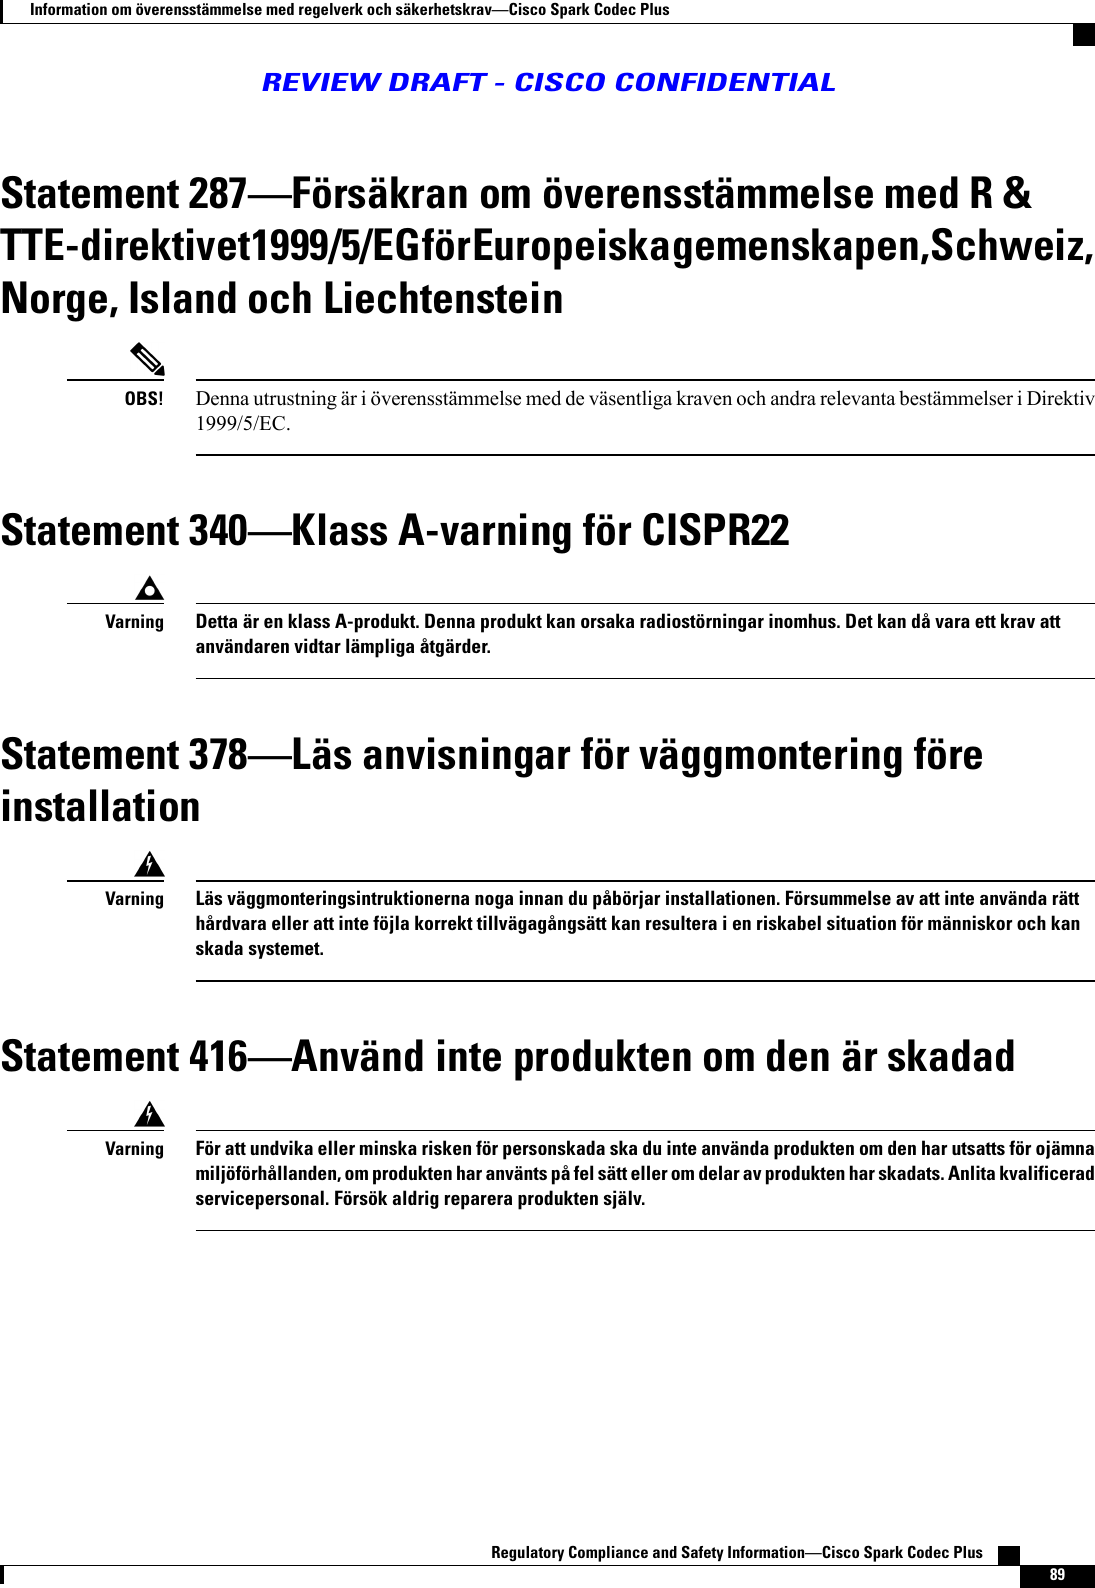 Statement 287Försäkran om överensstämmelse med R &amp;TTE-direktivet 1999/5/EG för Europeiska gemenskapen, Schweiz,Norge, Island och LiechtensteinDenna utrustning är i överensstämmelse med de väsentliga kraven och andra relevanta bestämmelser i Direktiv1999/5/EC.OBS!Statement 340Klass A-varning för CISPR22Detta är en klass A-produkt. Denna produkt kan orsaka radiostörningar inomhus. Det kan då vara ett krav attanvändaren vidtar lämpliga åtgärder.VarningStatement 378Läs anvisningar för väggmontering föreinstallationLäs väggmonteringsintruktionerna noga innan du påbörjar installationen. Försummelse av att inte använda rätthårdvara eller att inte föjla korrekt tillvägagångsätt kan resultera i en riskabel situation för människor och kanskada systemet.VarningStatement 416Använd inte produkten om den är skadadFör att undvika eller minska risken för personskada ska du inte använda produkten om den har utsatts för ojämnamiljöförhållanden, om produkten har använts på fel sätt eller om delar av produkten har skadats. Anlita kvalificeradservicepersonal. Försök aldrig reparera produkten själv.VarningRegulatory Compliance and Safety InformationCisco Spark Codec Plus    89Information om överensstämmelse med regelverk och säkerhetskravCisco Spark Codec PlusREVIEW DRAFT - CISCO CONFIDENTIAL